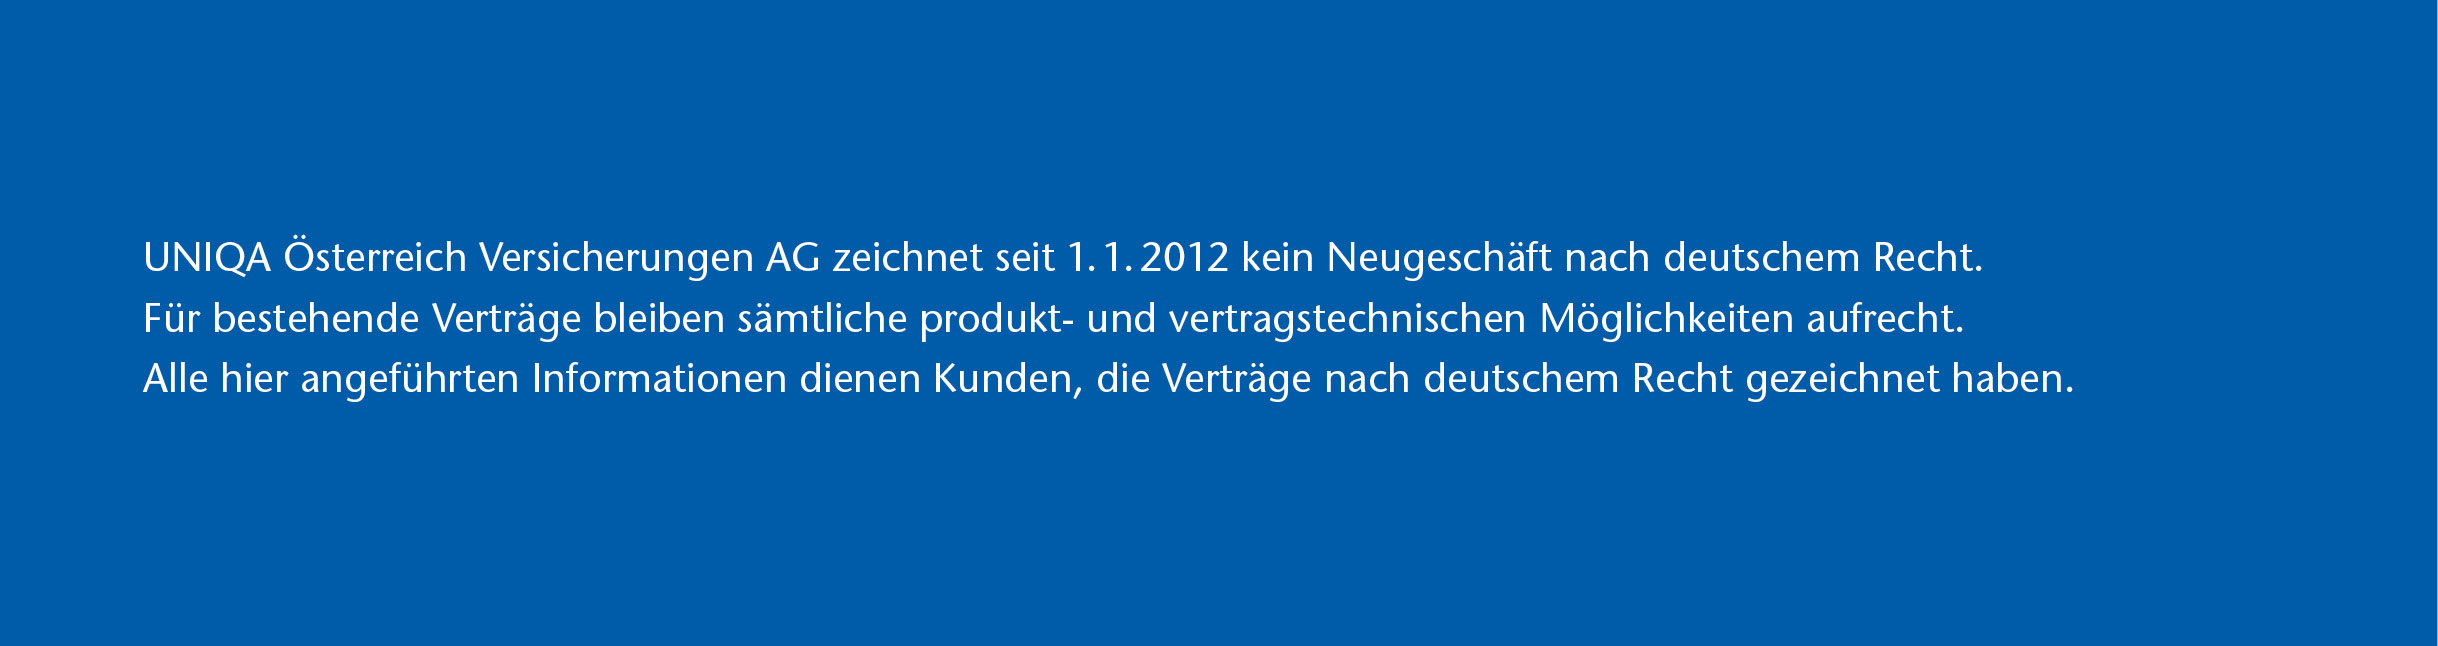 UNIQA Österreich Versicherungen AG zeichnet seit 1.1.2012 kein Neugeschäft nach deutschem Recht.